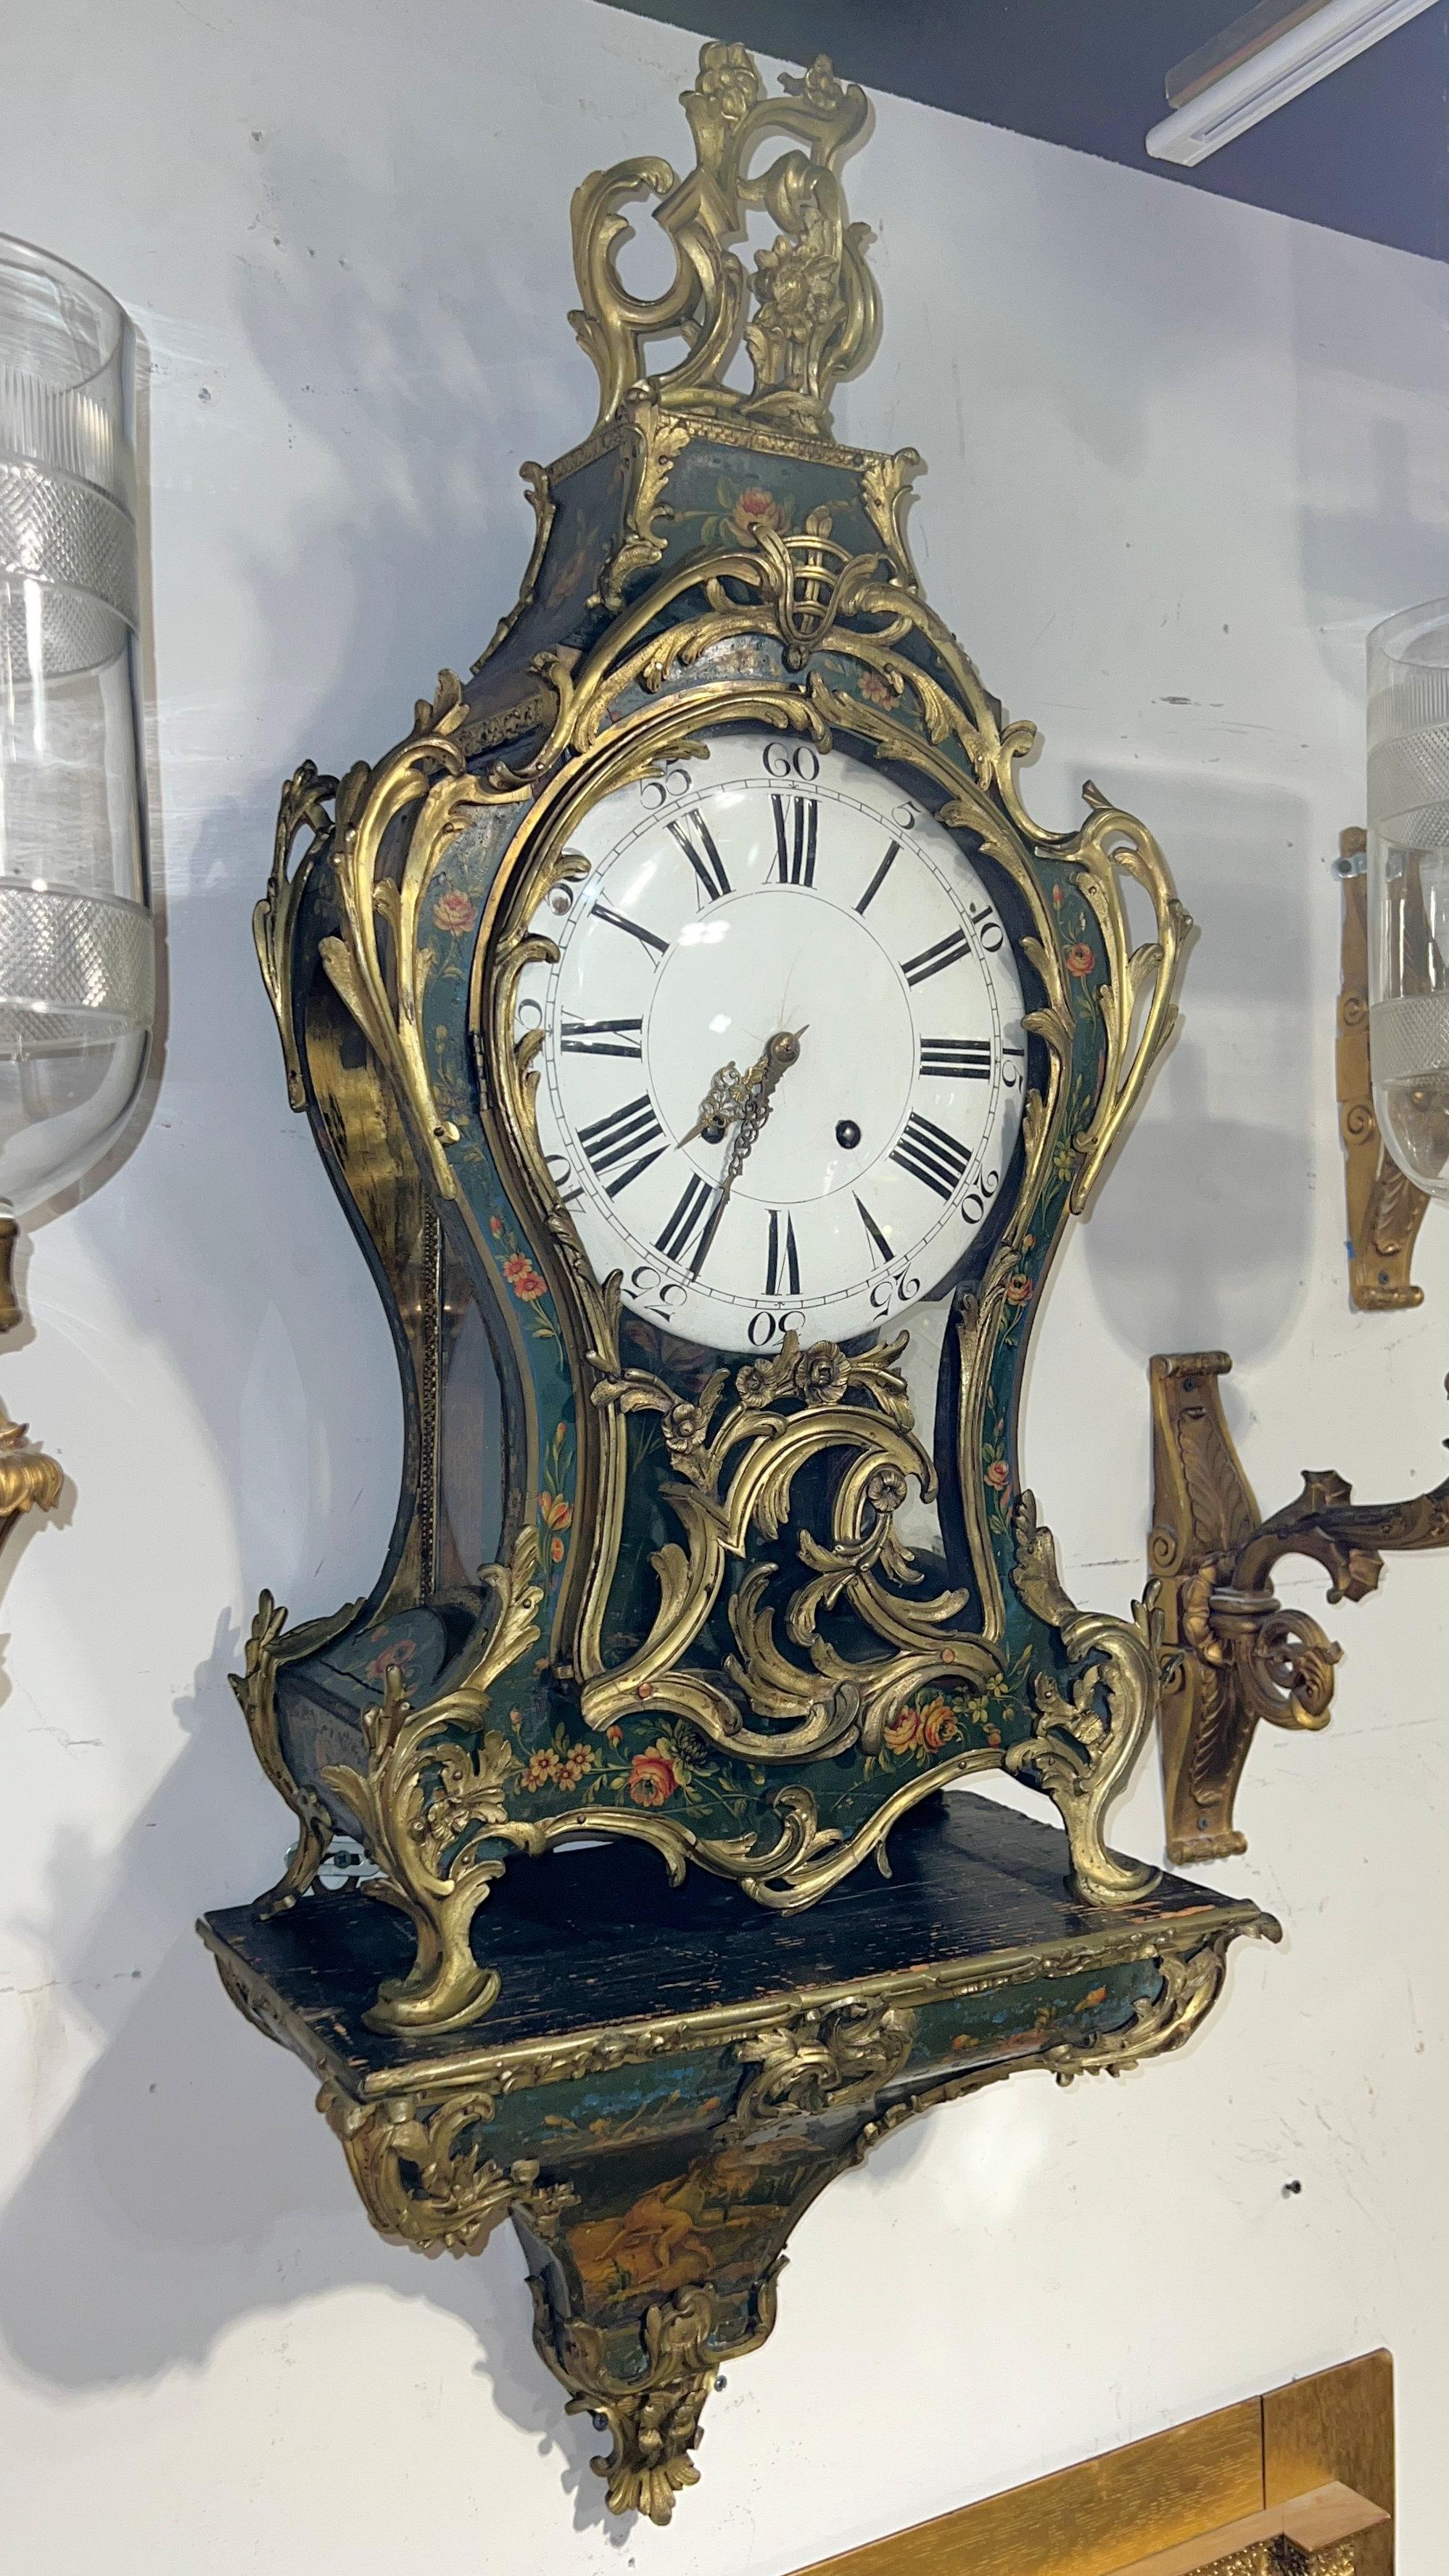 Grande horloge française ancienne à console de style Louis XV, avec boîtier en bois présentant des motifs floraux finement peints et une oie et un chien à la base, sur fond vert, avec des montures en bronze doré bien moulées et un cadran d'origine